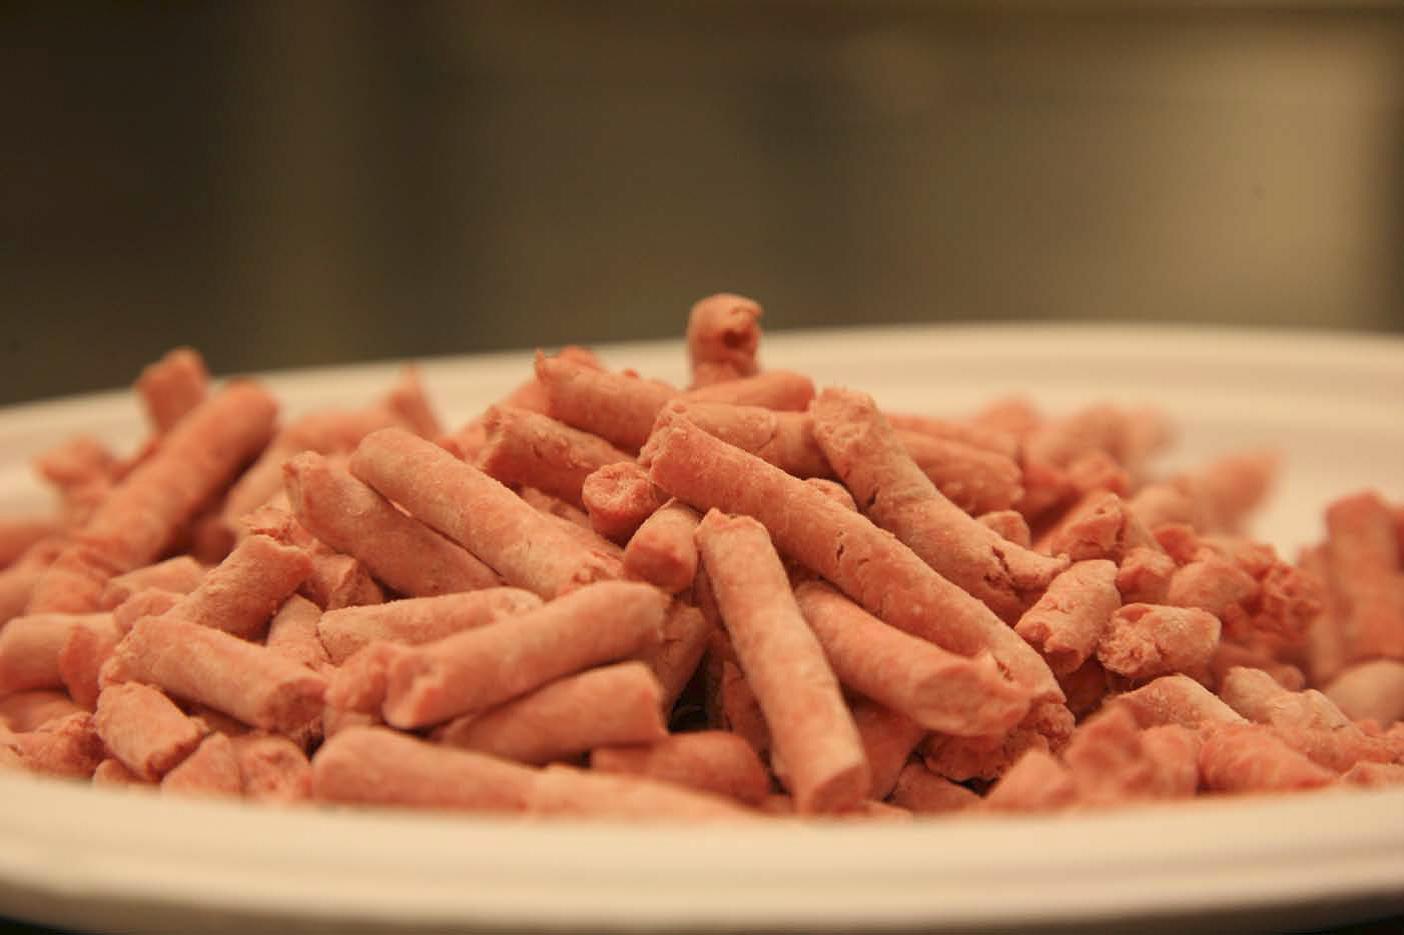 Pink slime food safety concerns a 'gross misunderstanding' - producer